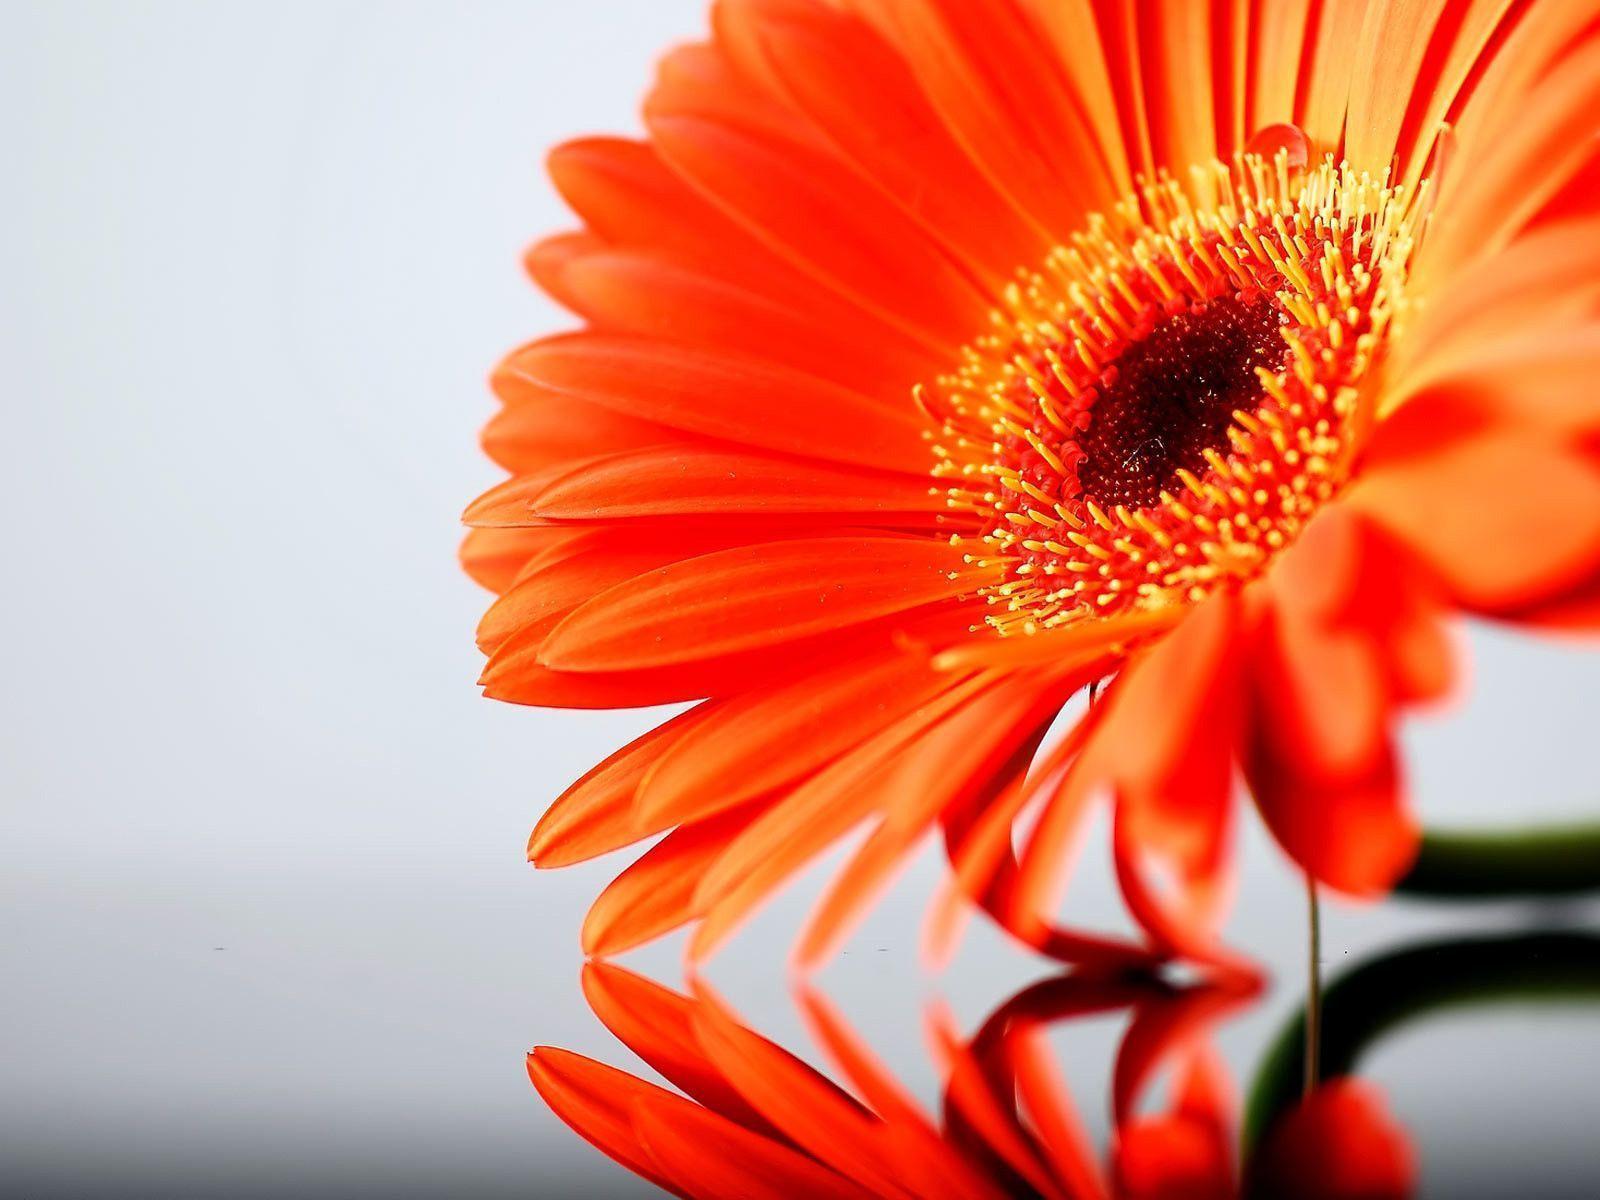 orange daisy flower images